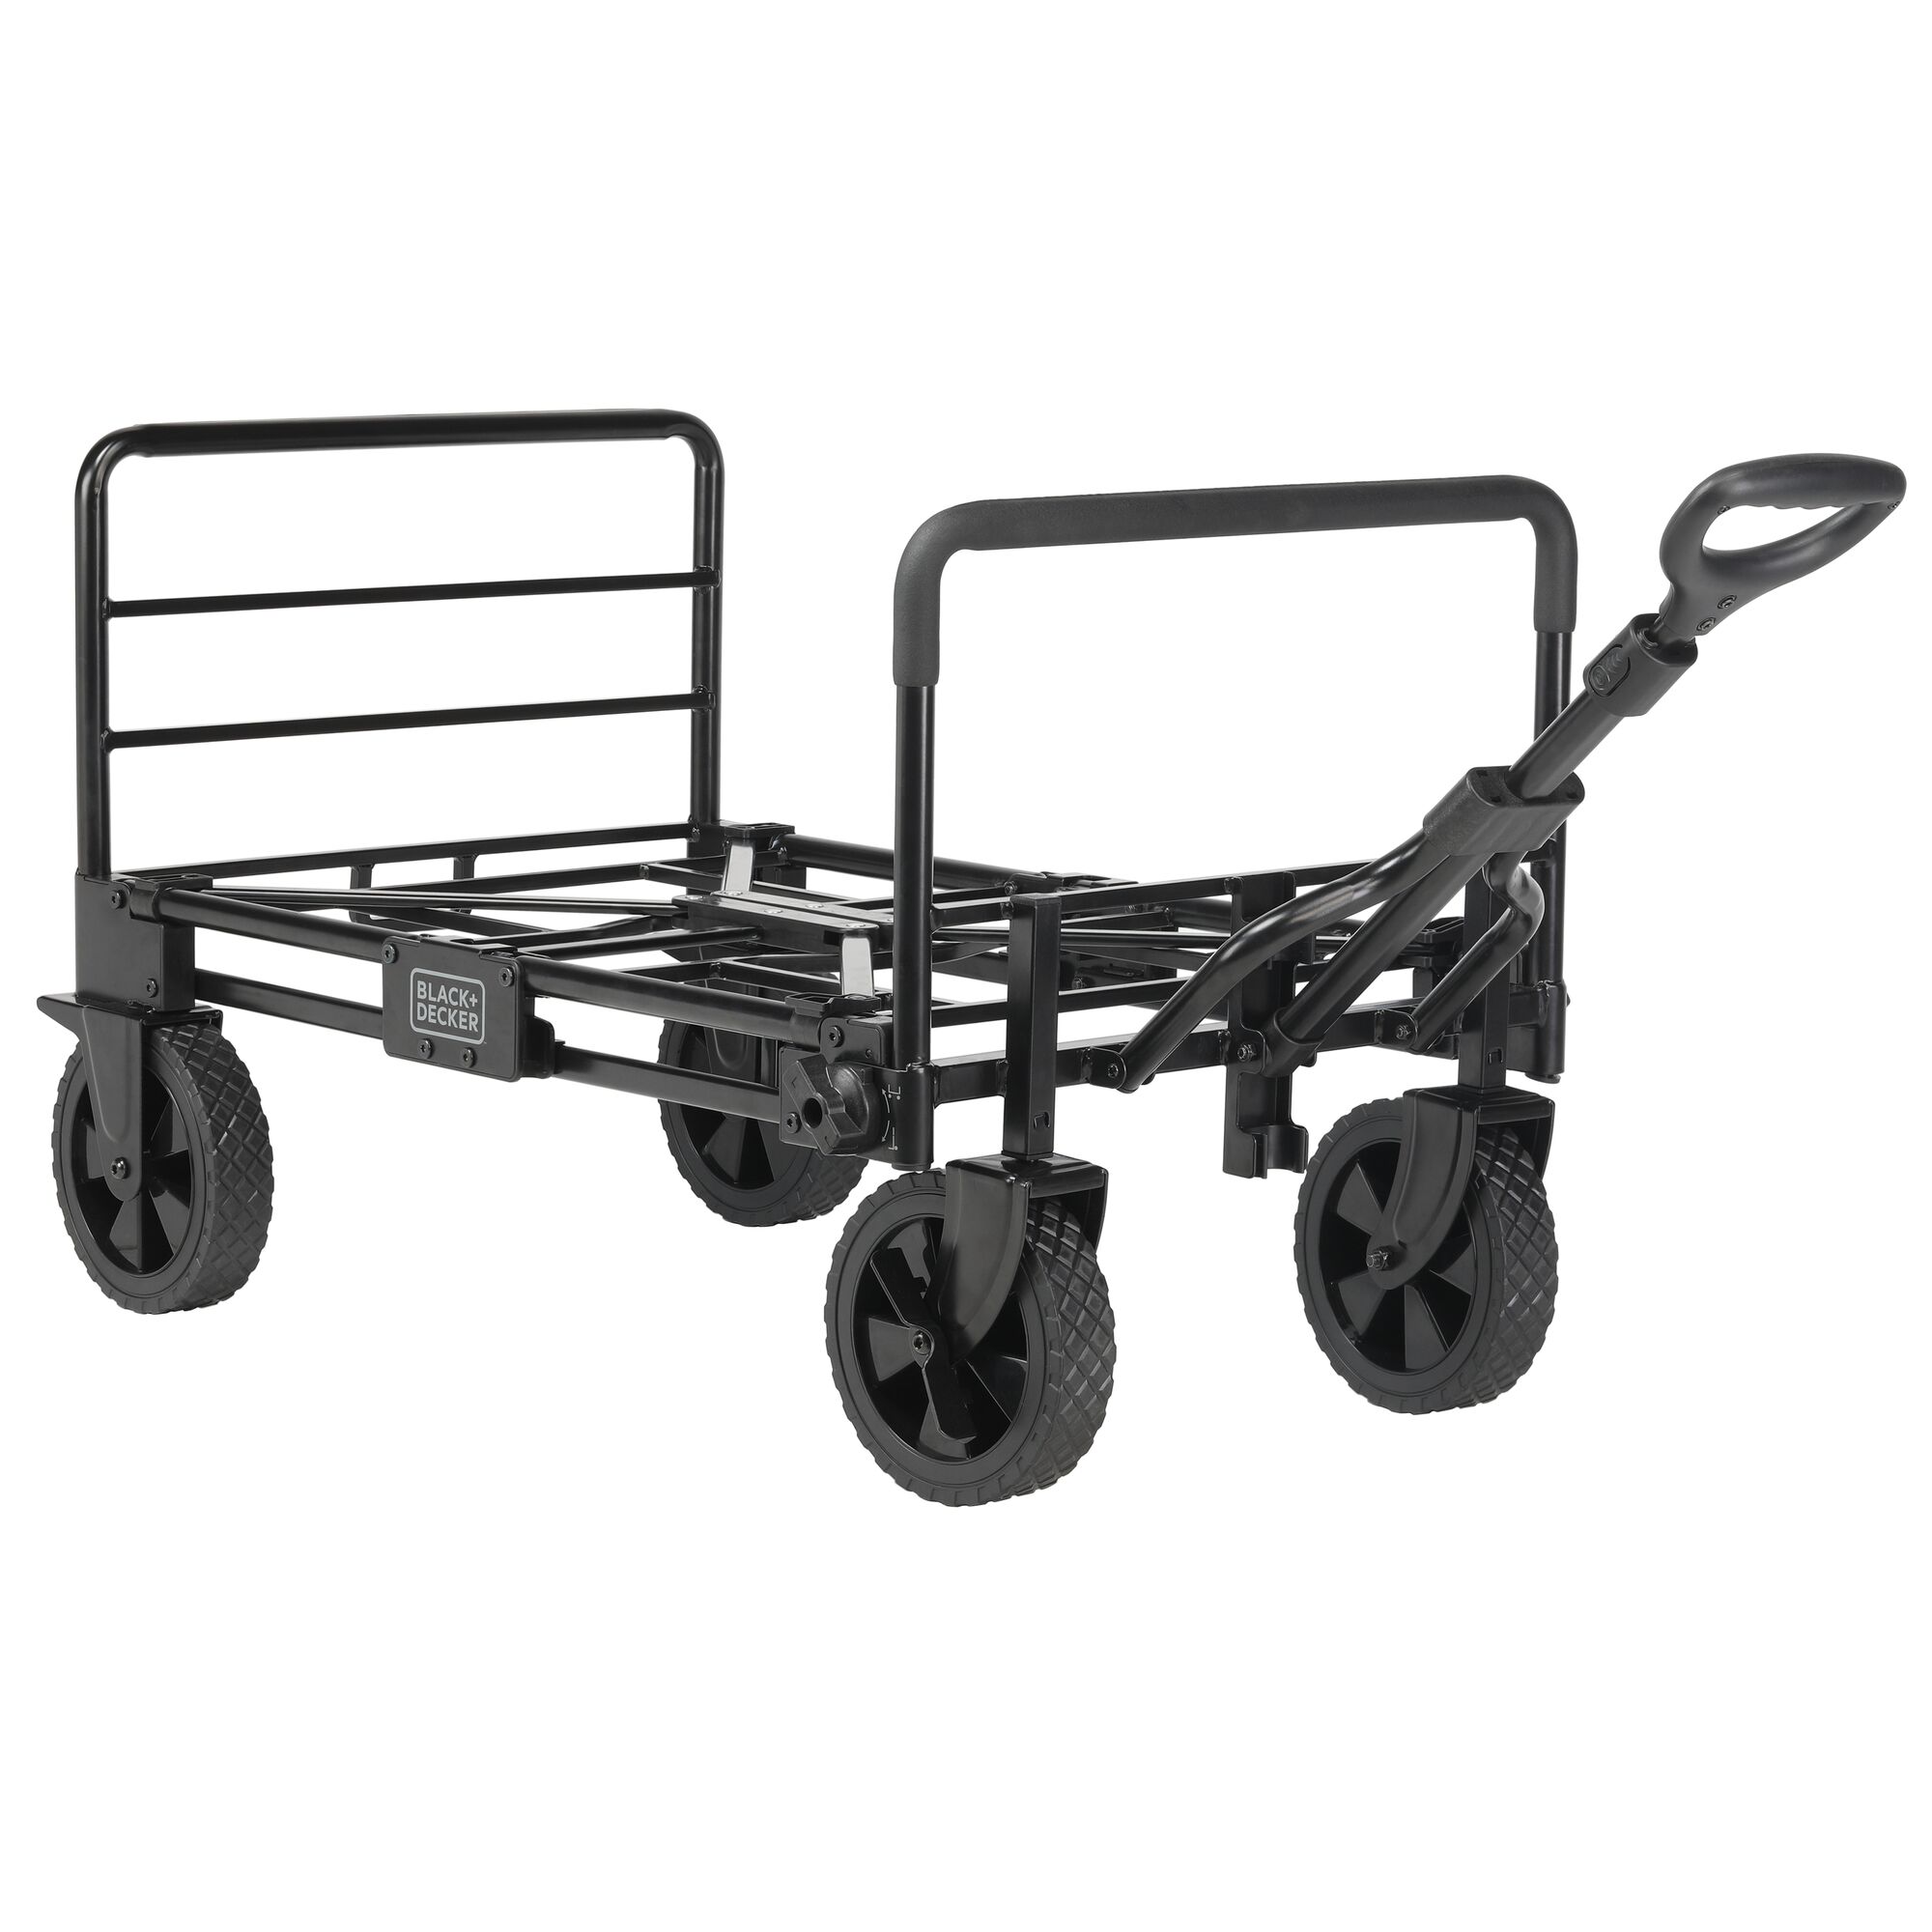 3in1 cart, platform bed